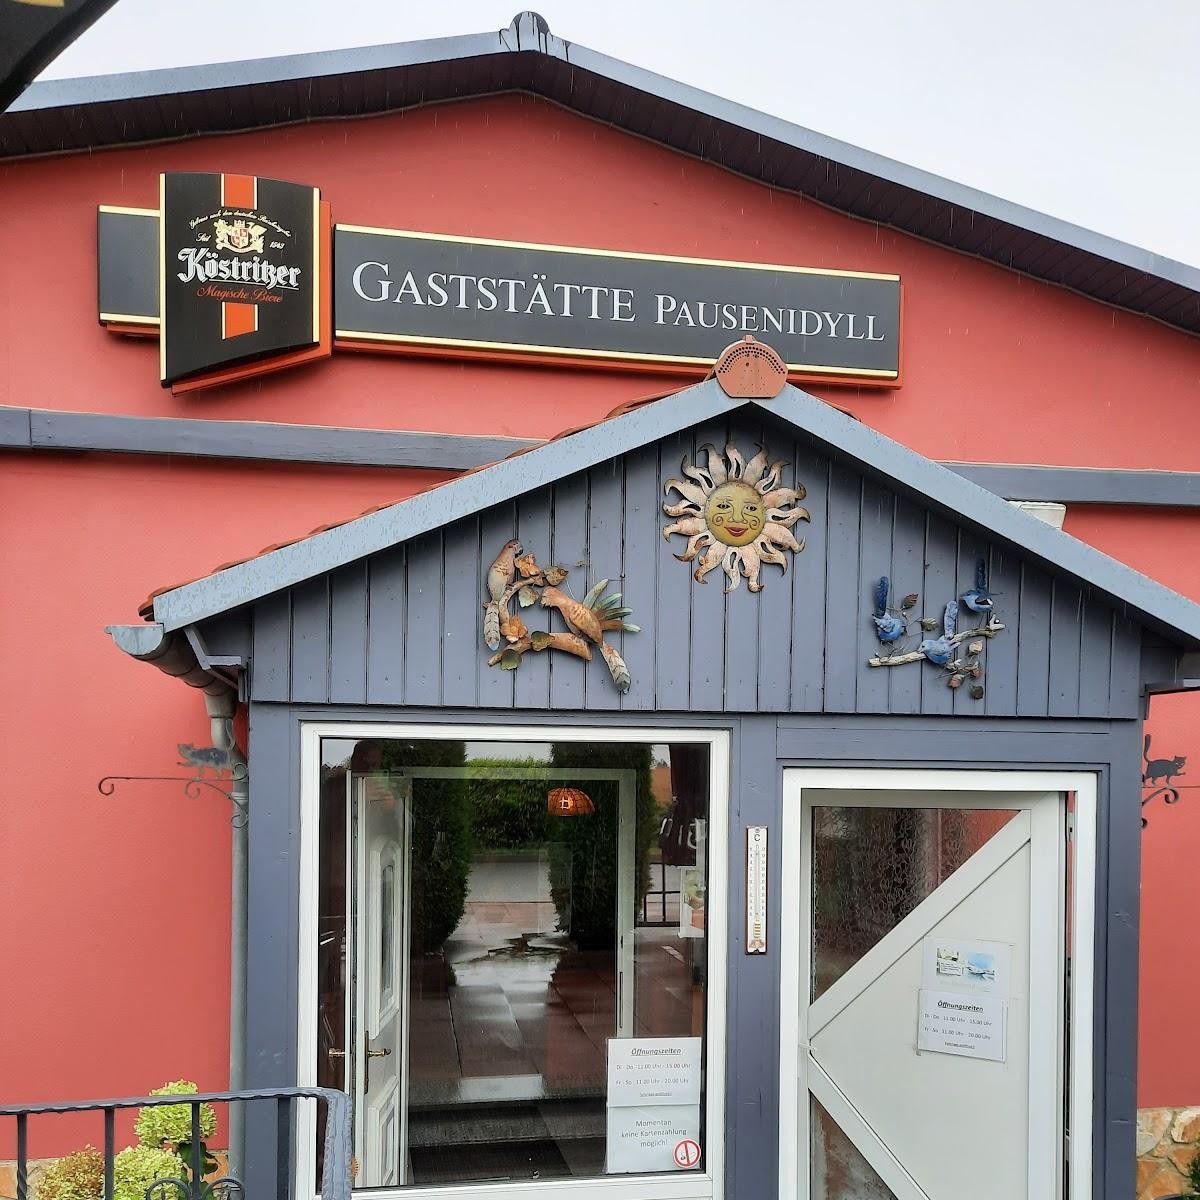 Restaurant "Gaststätte Pausenidyll" in Gutenborn